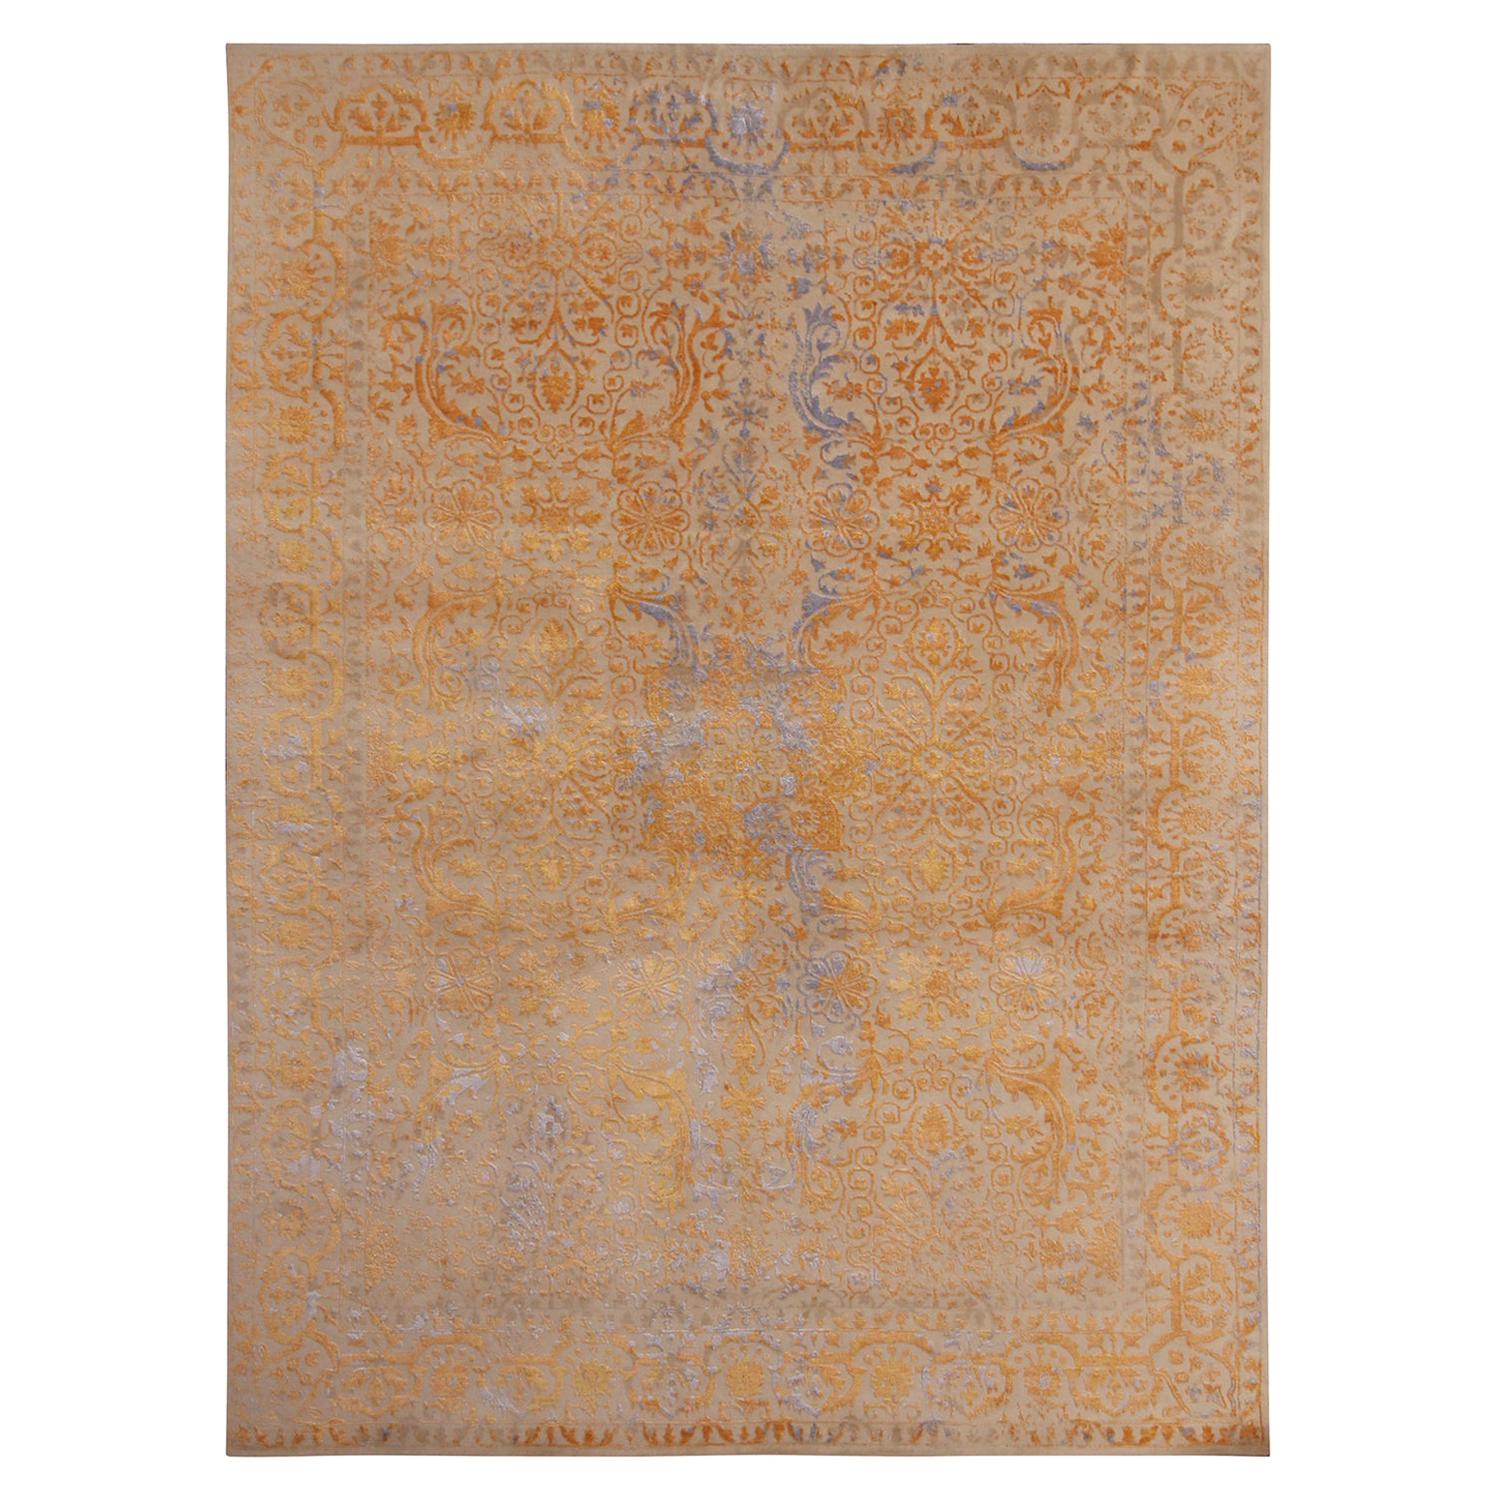 Teppich & Kilims Geometrischer, geblümter Teppich in Beige, Gold und Blau aus Wolle und Seide